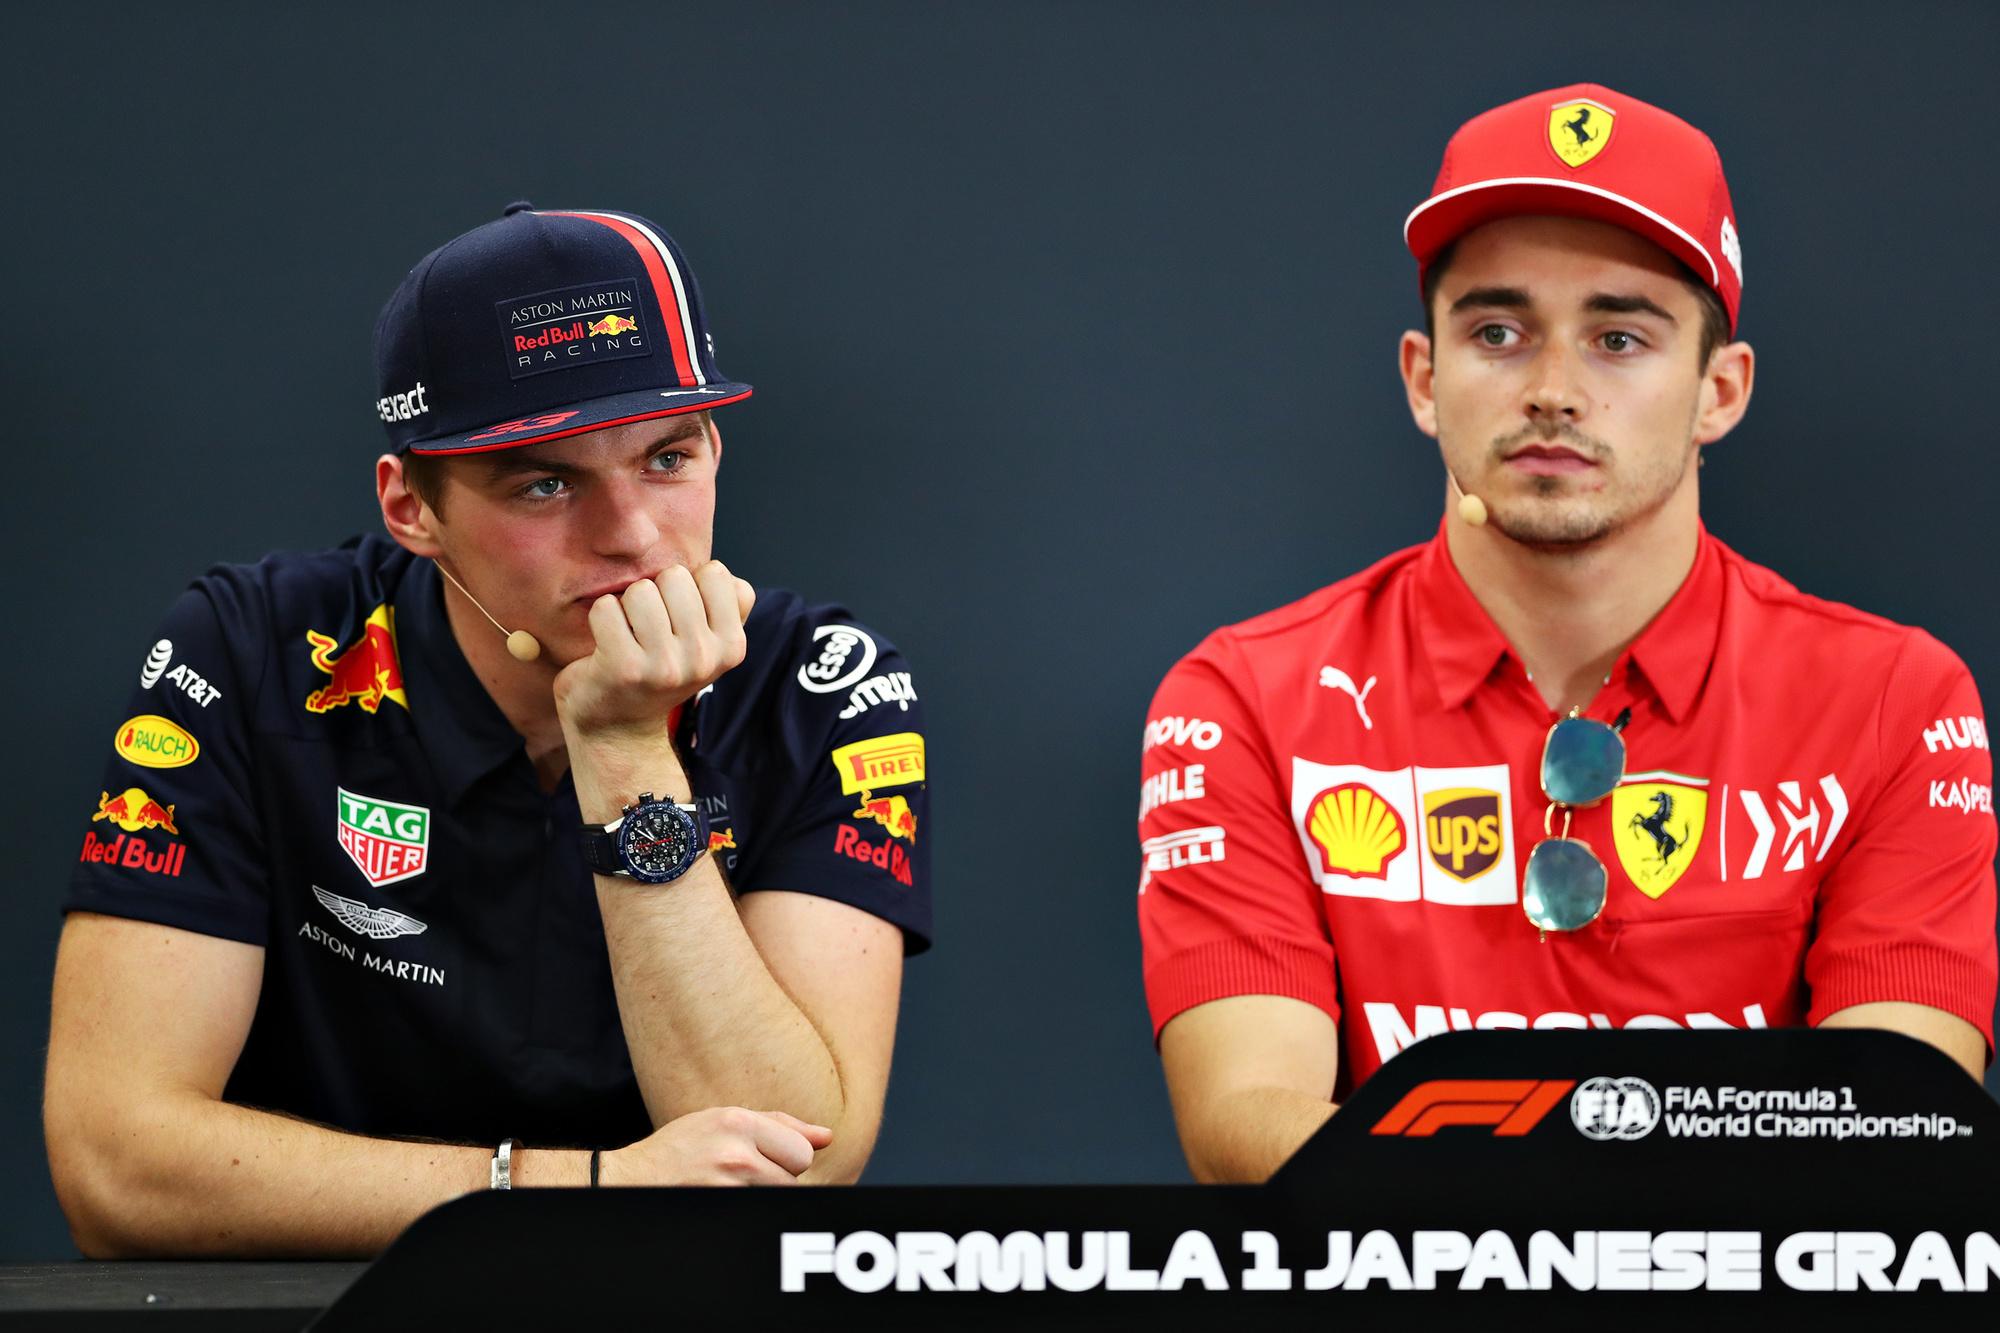 Wie wordt de grootste uitdager van Lewis Hamilton? Max Verstappen of Charles Leclerc?